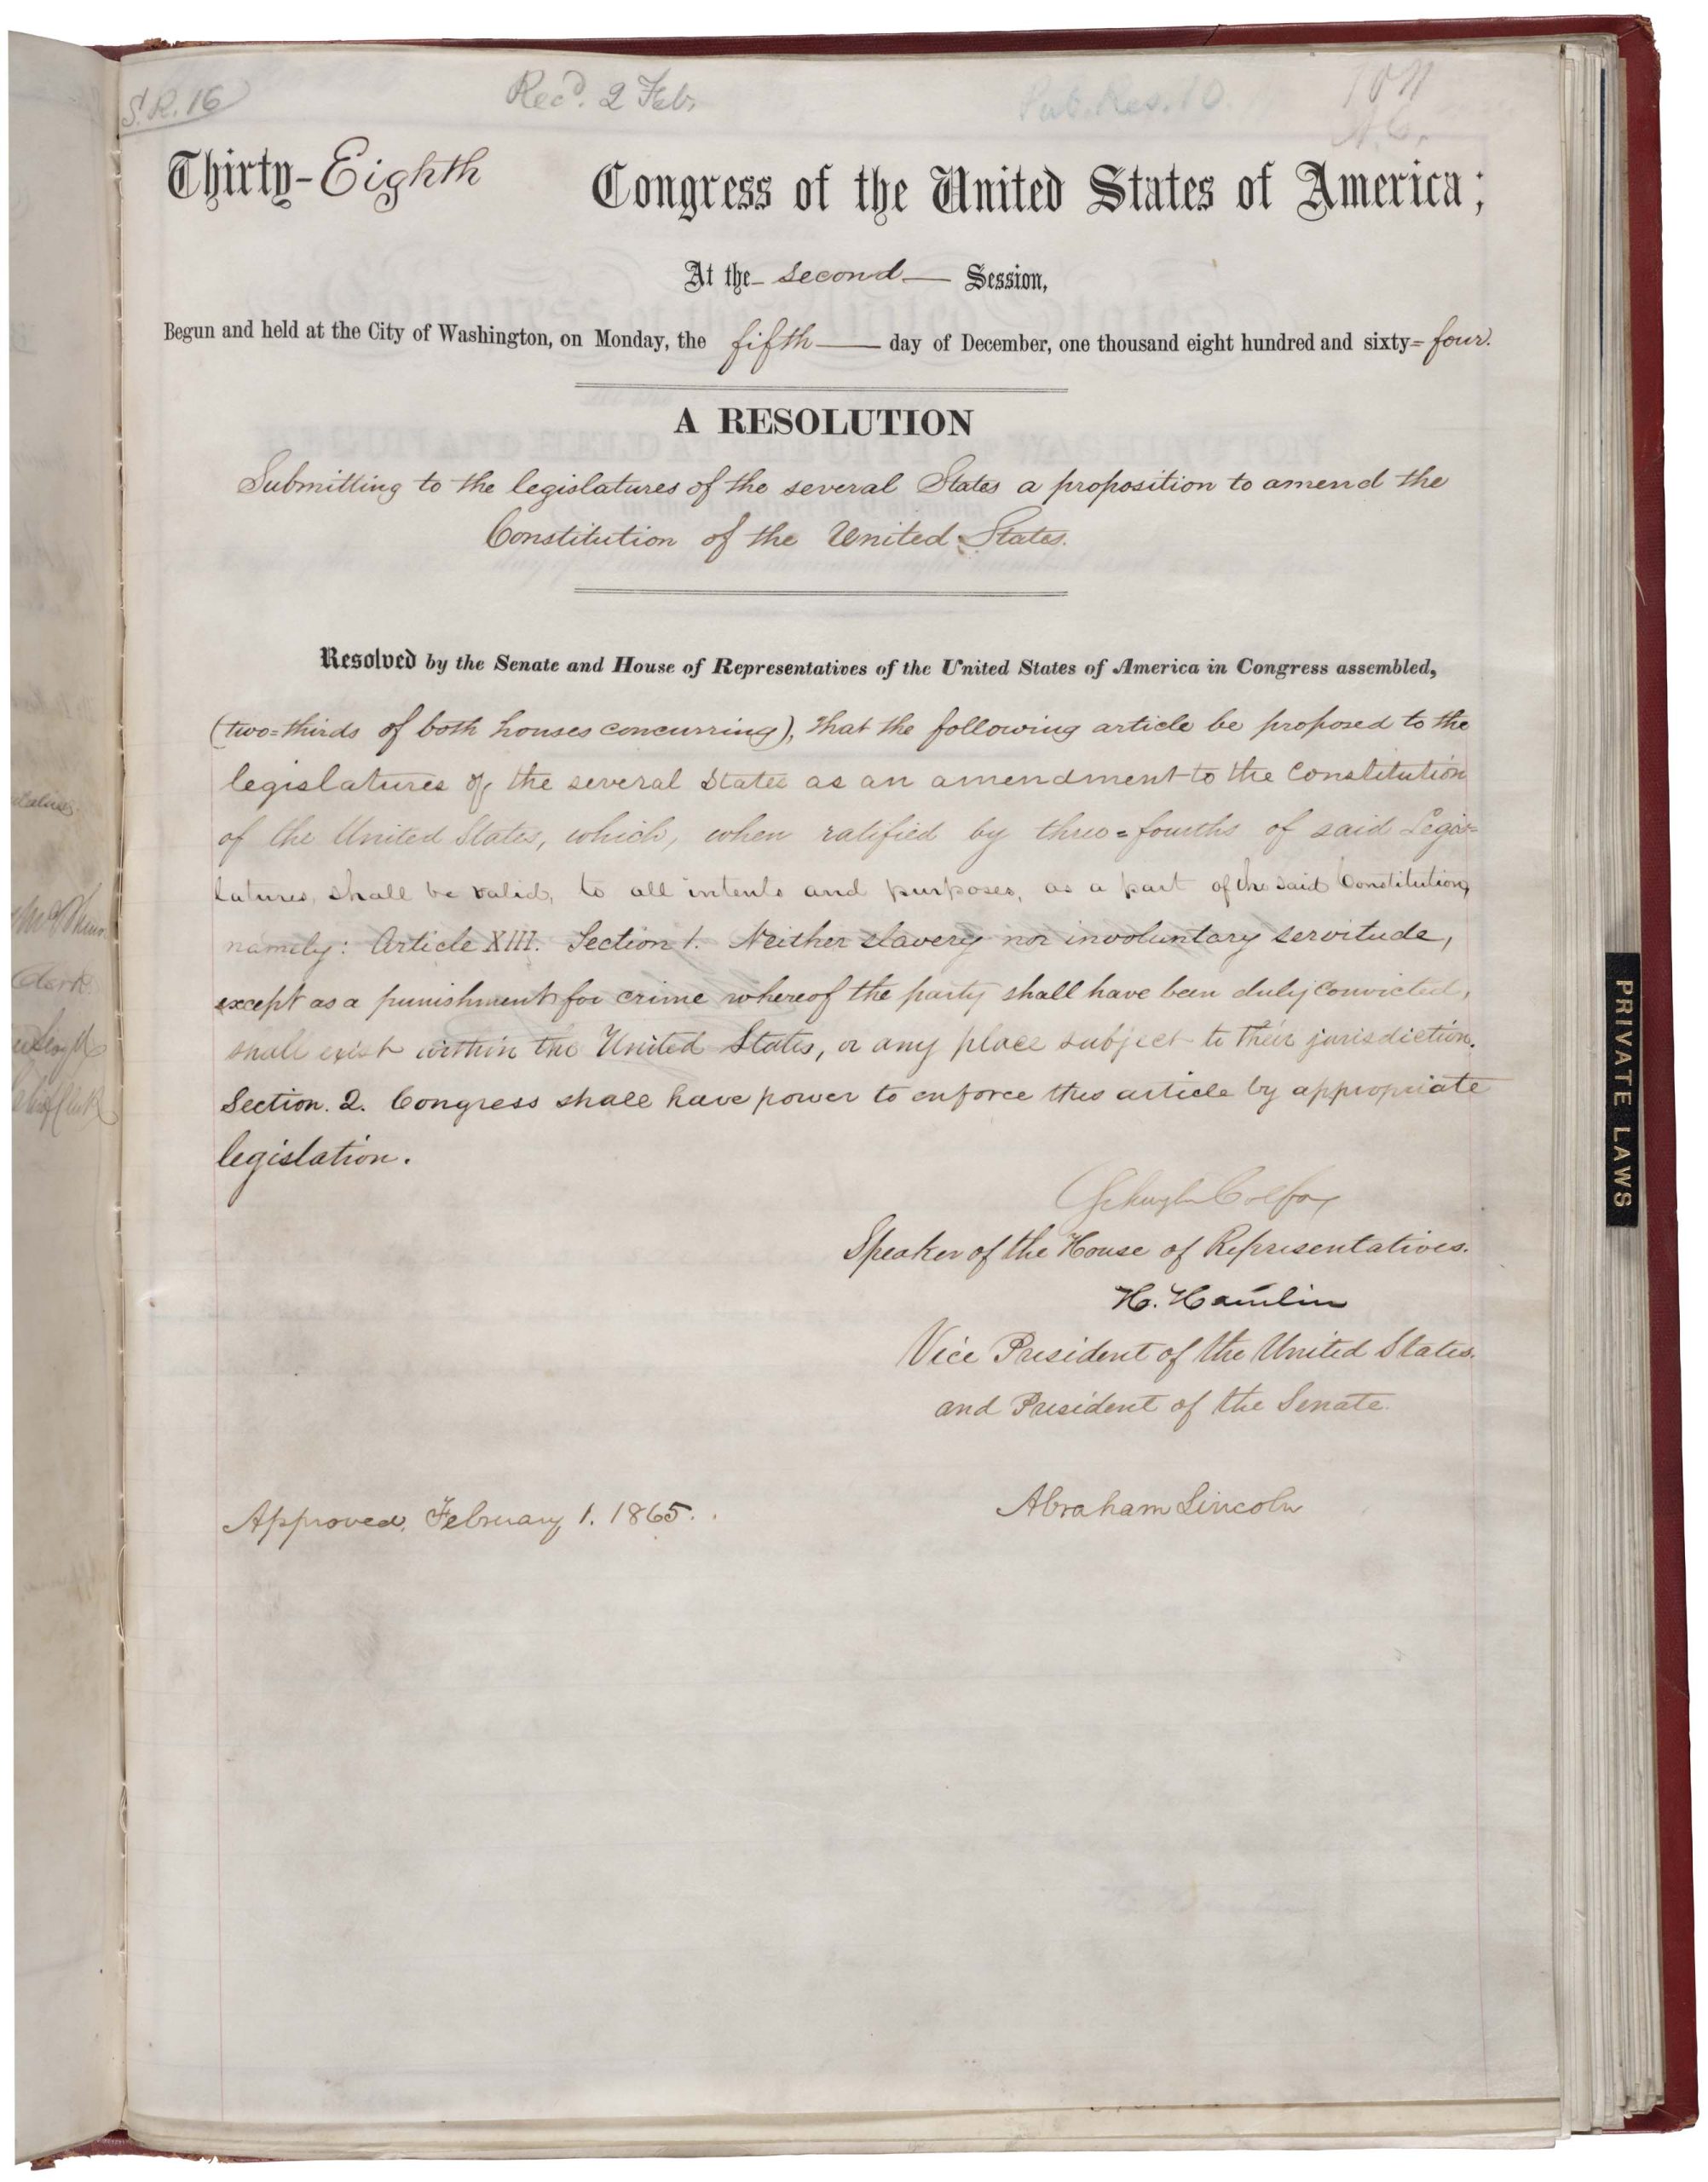 13-та поправка до конституції США, яка скасувала рабство